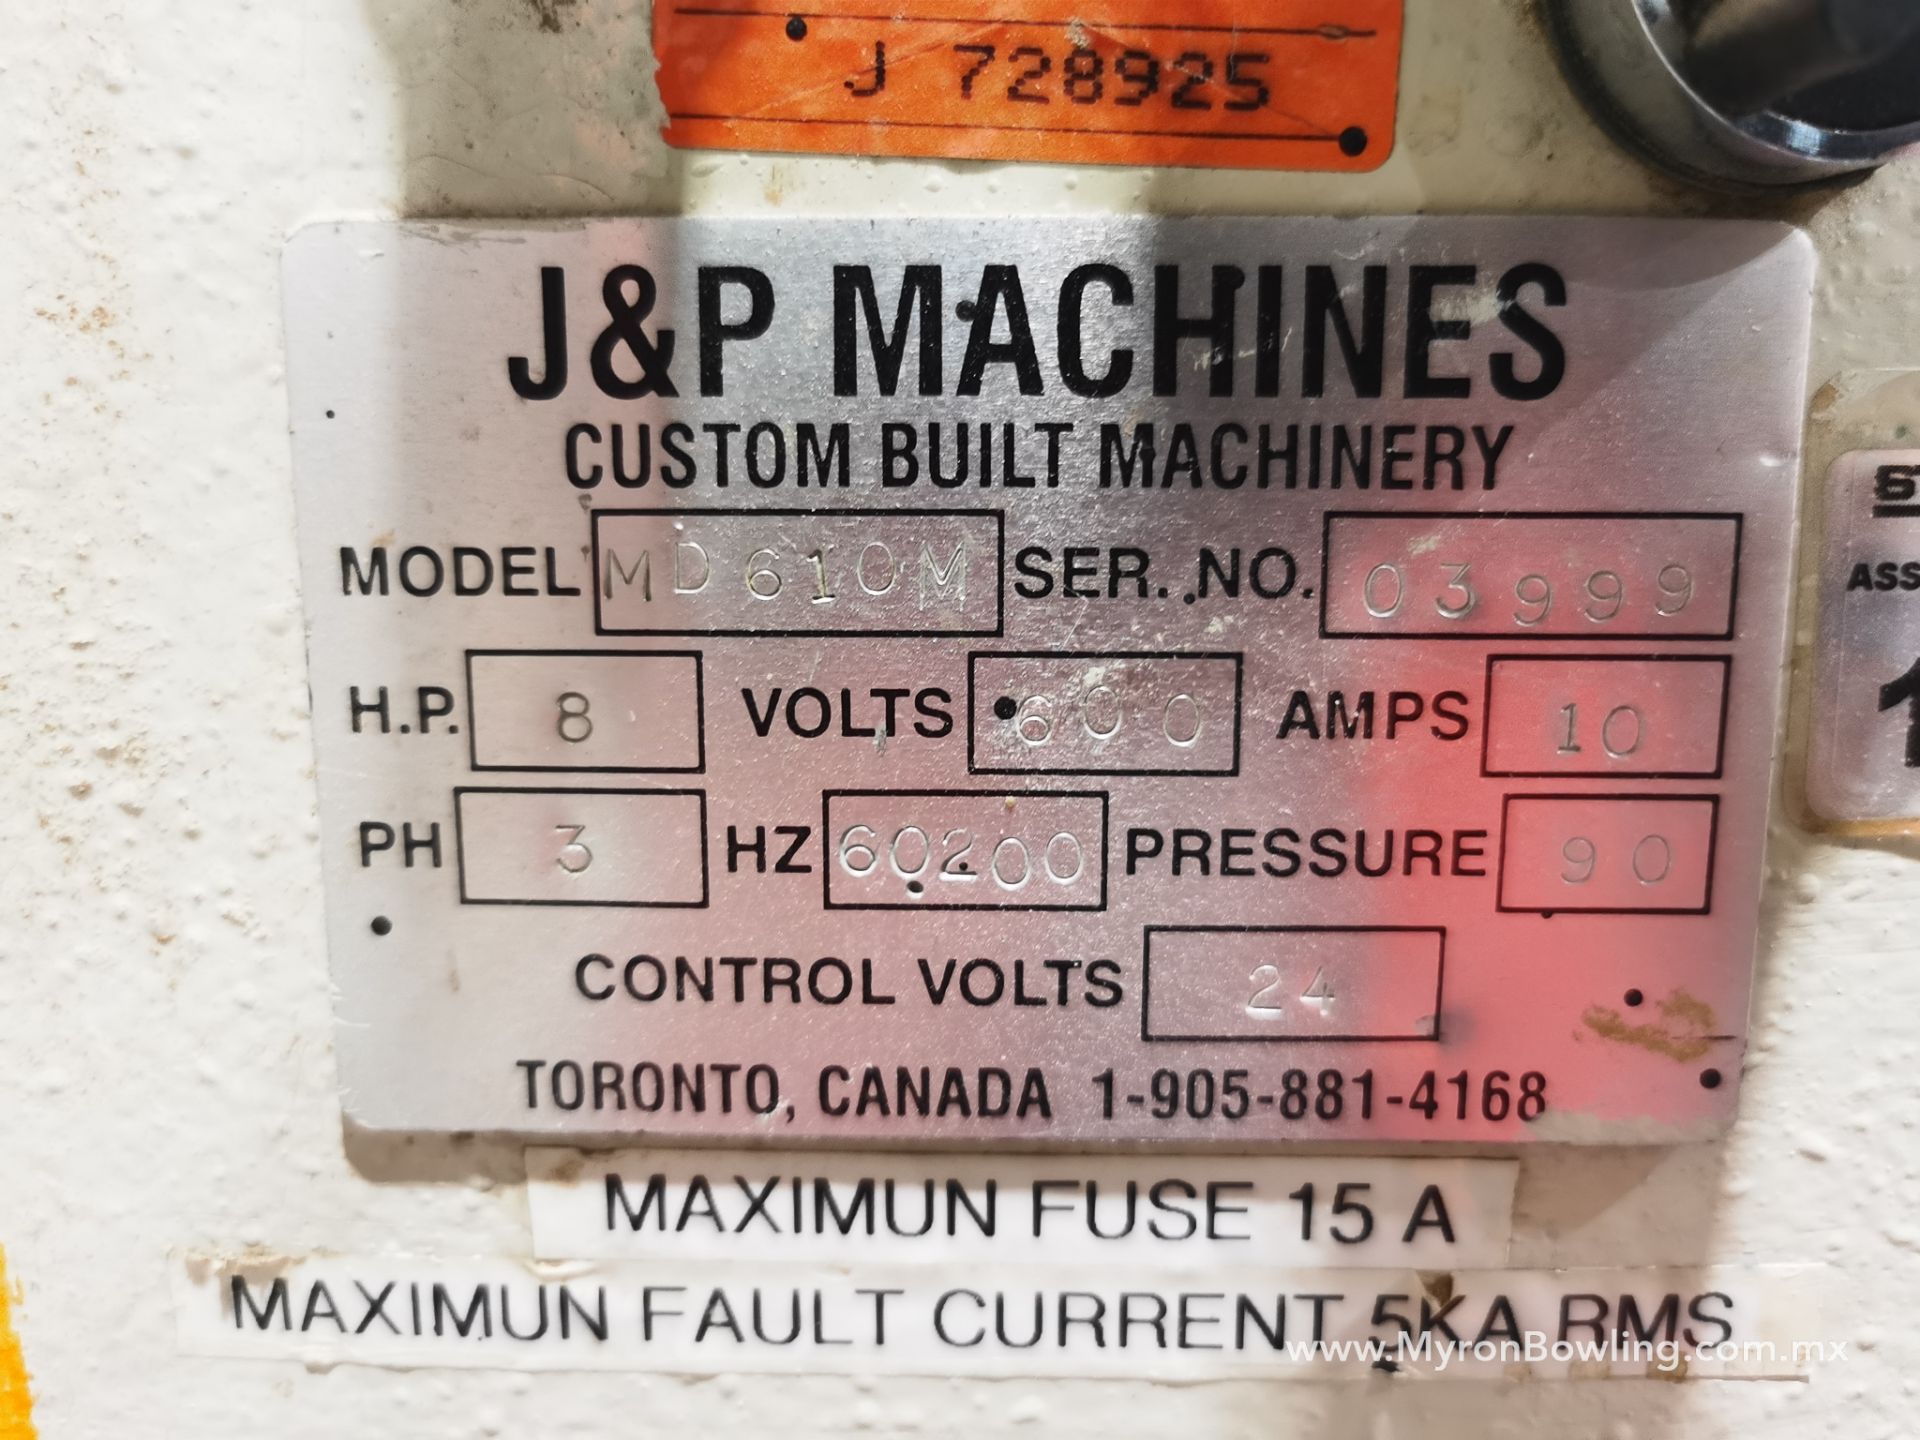 J&P Drawer Front Boring Machine, Model MD610M, S/N 3999, 600 V / 60 Hz, ASSET NUMBER 11204 - Image 9 of 22